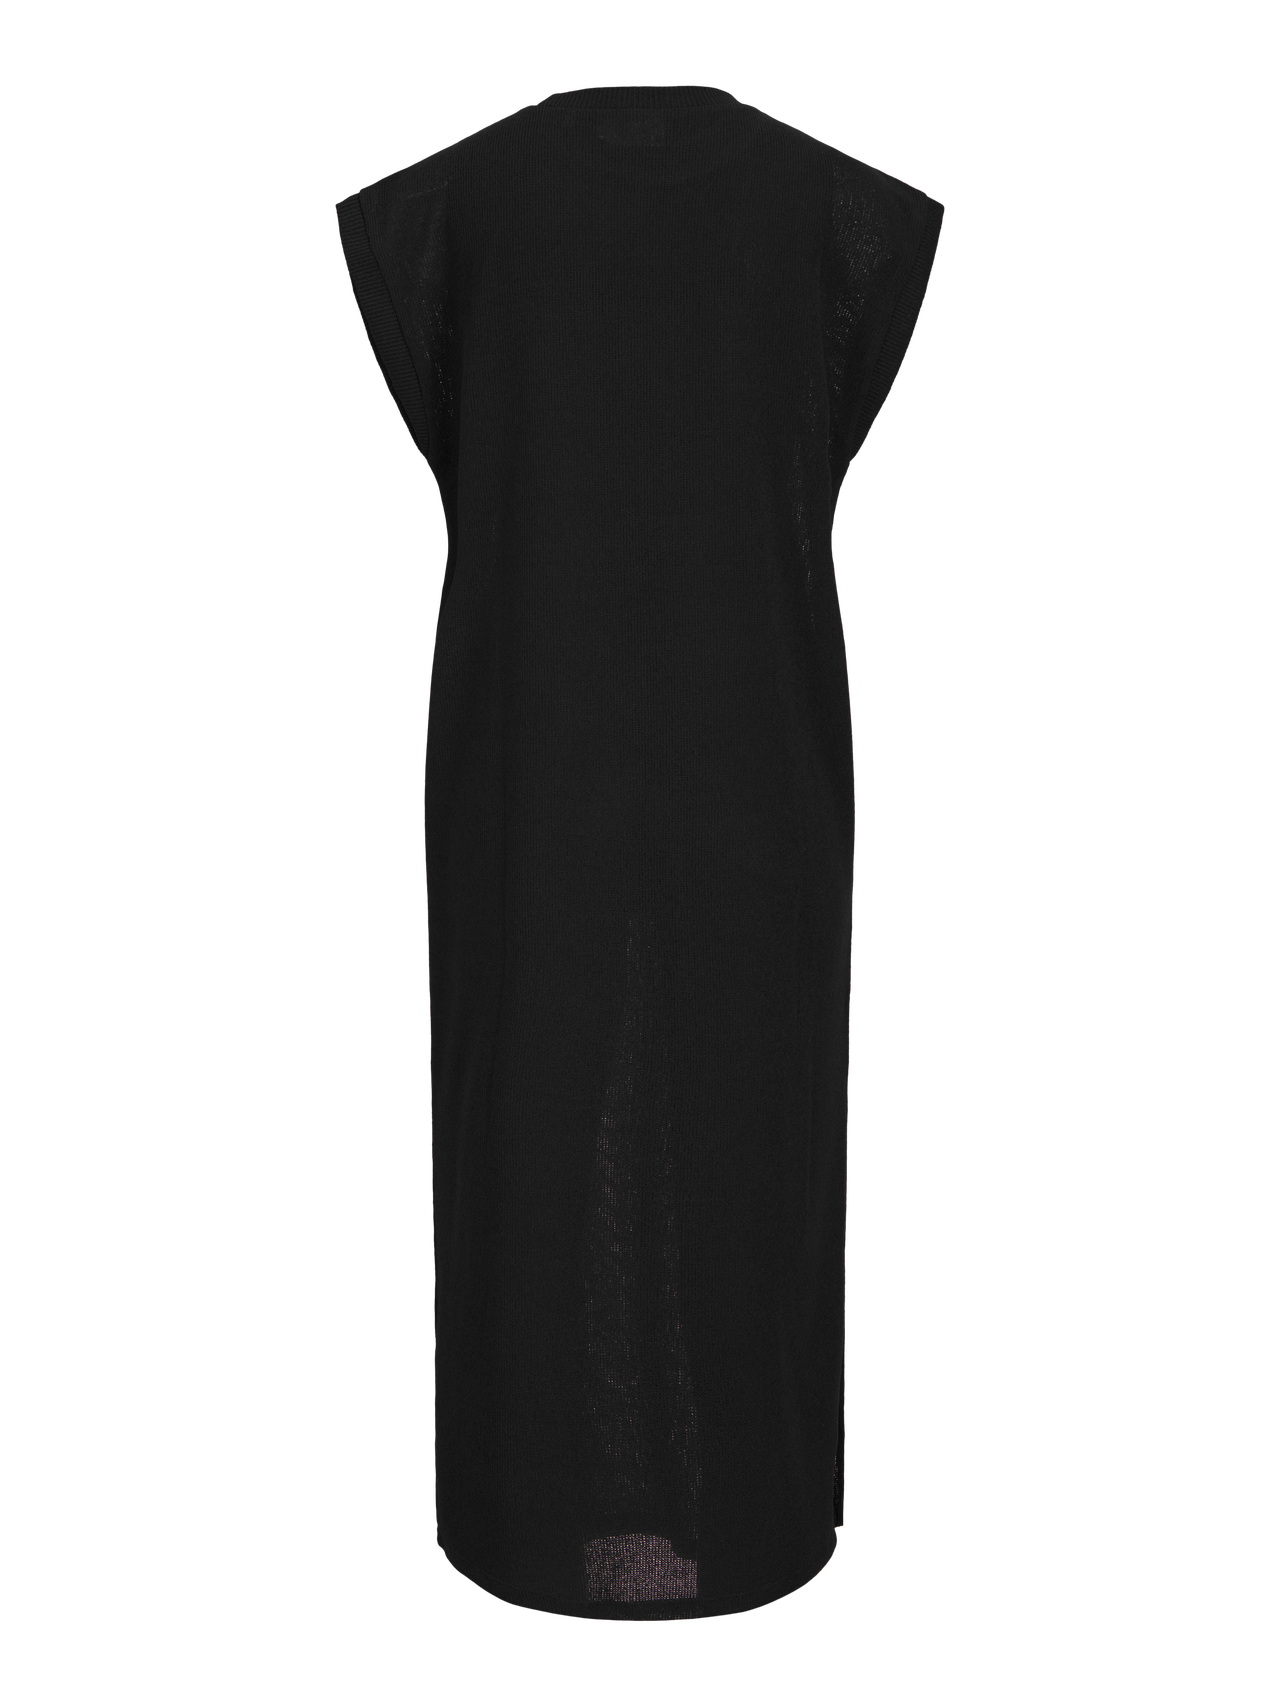 JJXX JXVERA Dress -Black - 12252411